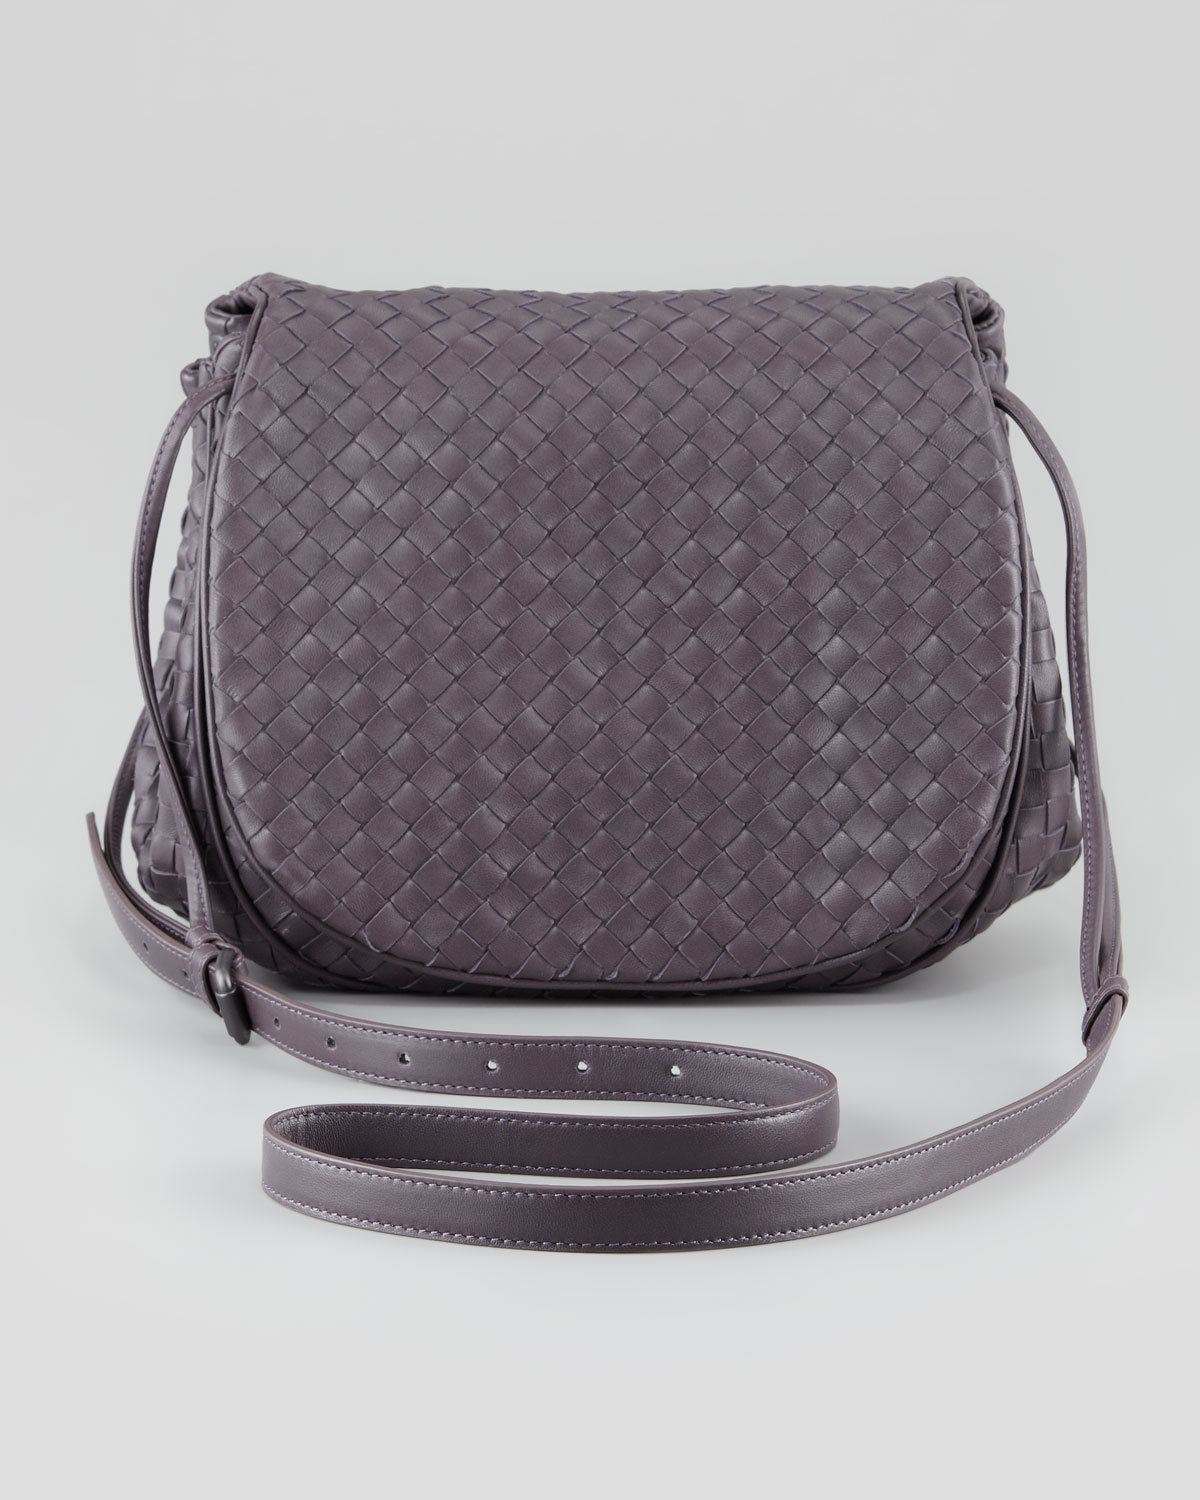 Bottega veneta Woven Leather Small Crossbody Messenger Bag in ...